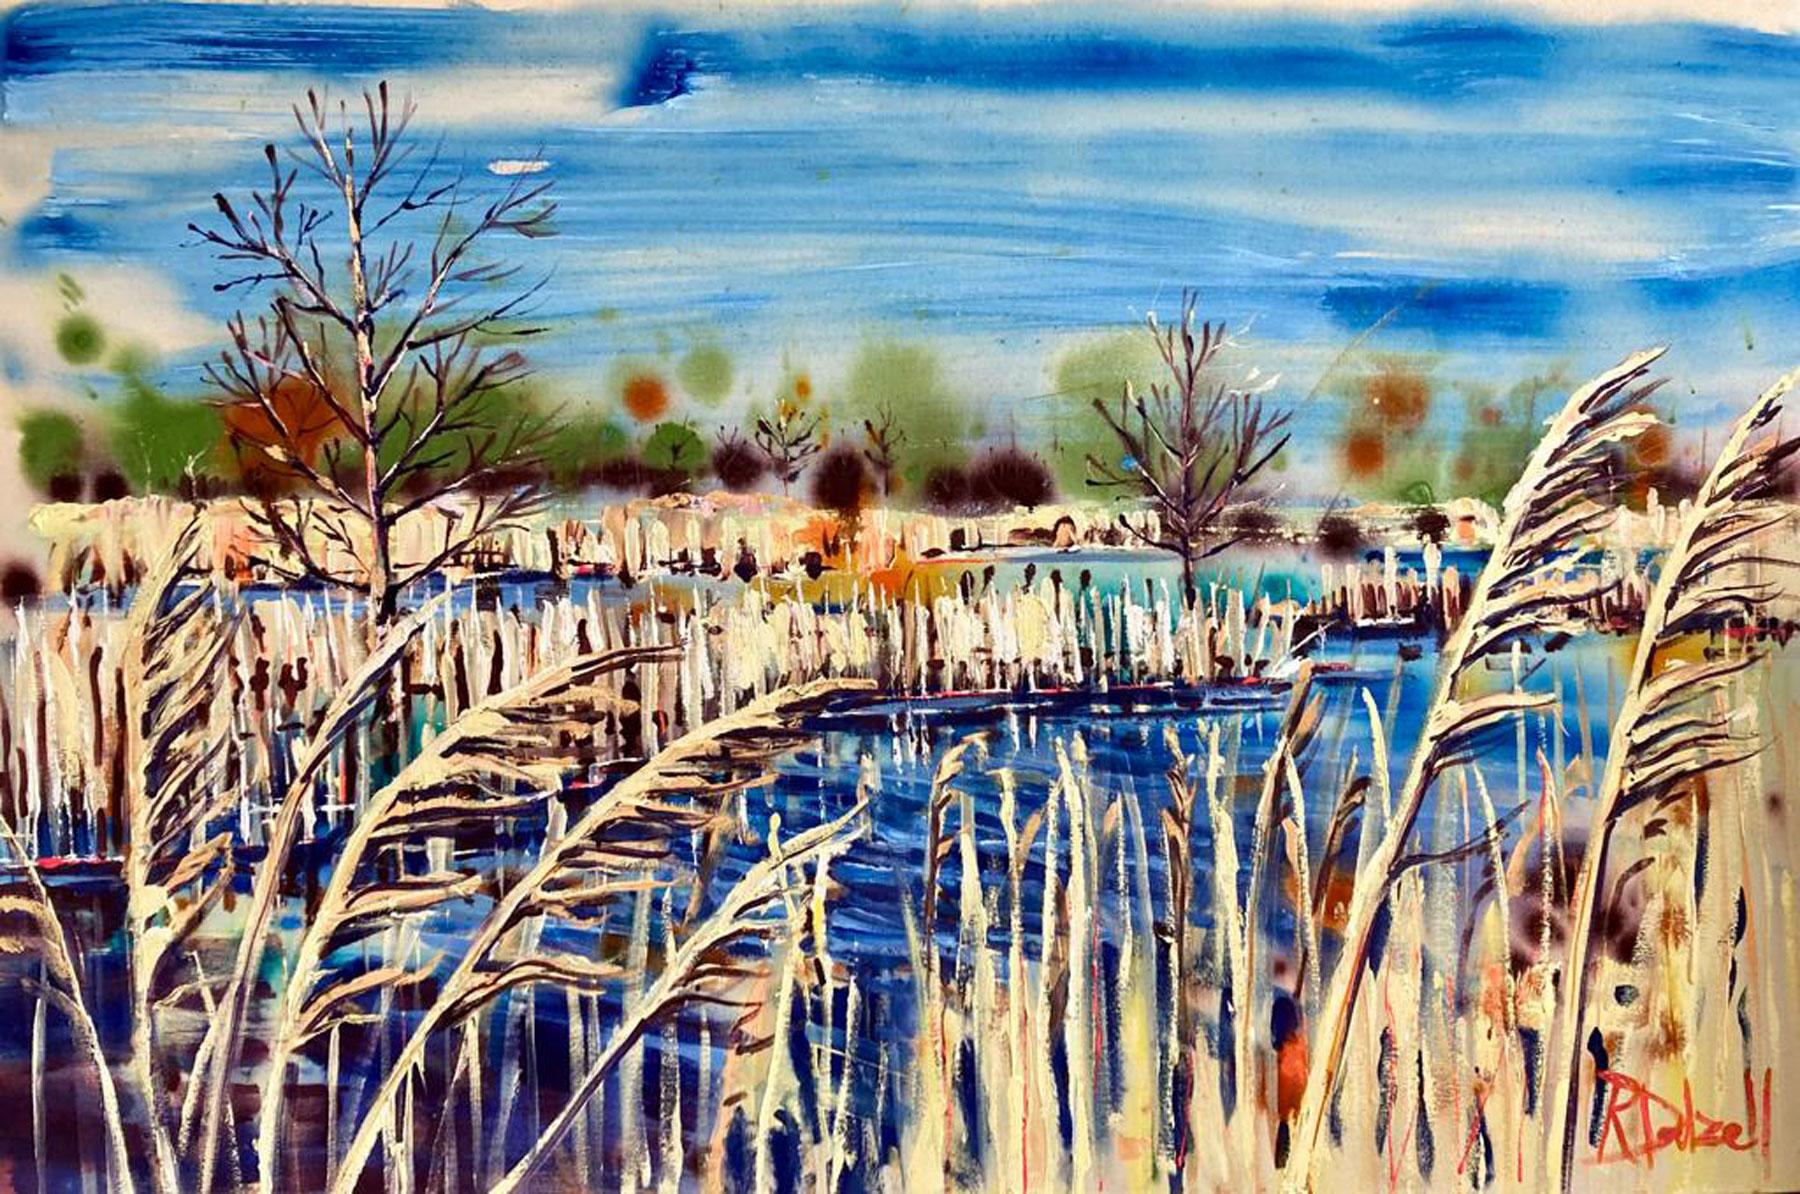 le tableau "From the calm whisper of reeds" est une peinture vibrante remplie des couleurs vives et froides de l'hiver.  Cette peinture est basée sur les Norfolk broads, avec les roseaux au premier plan qui donnent plus de profondeur à l'œuvre.

